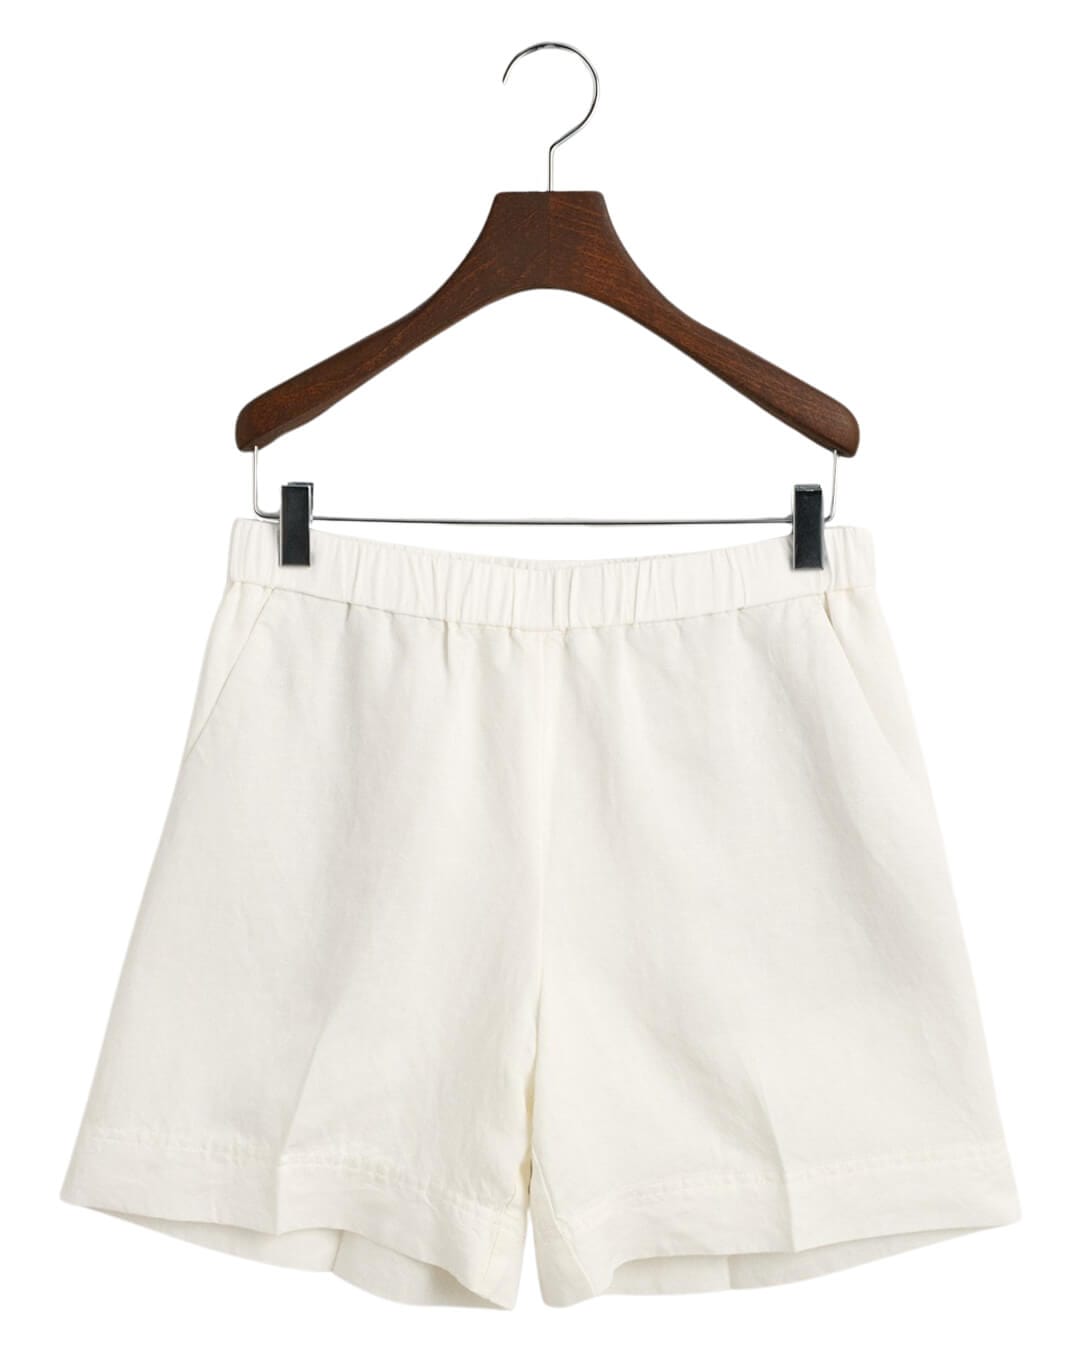 Gant Shorts Gant White Linen Blend Pull On Shorts